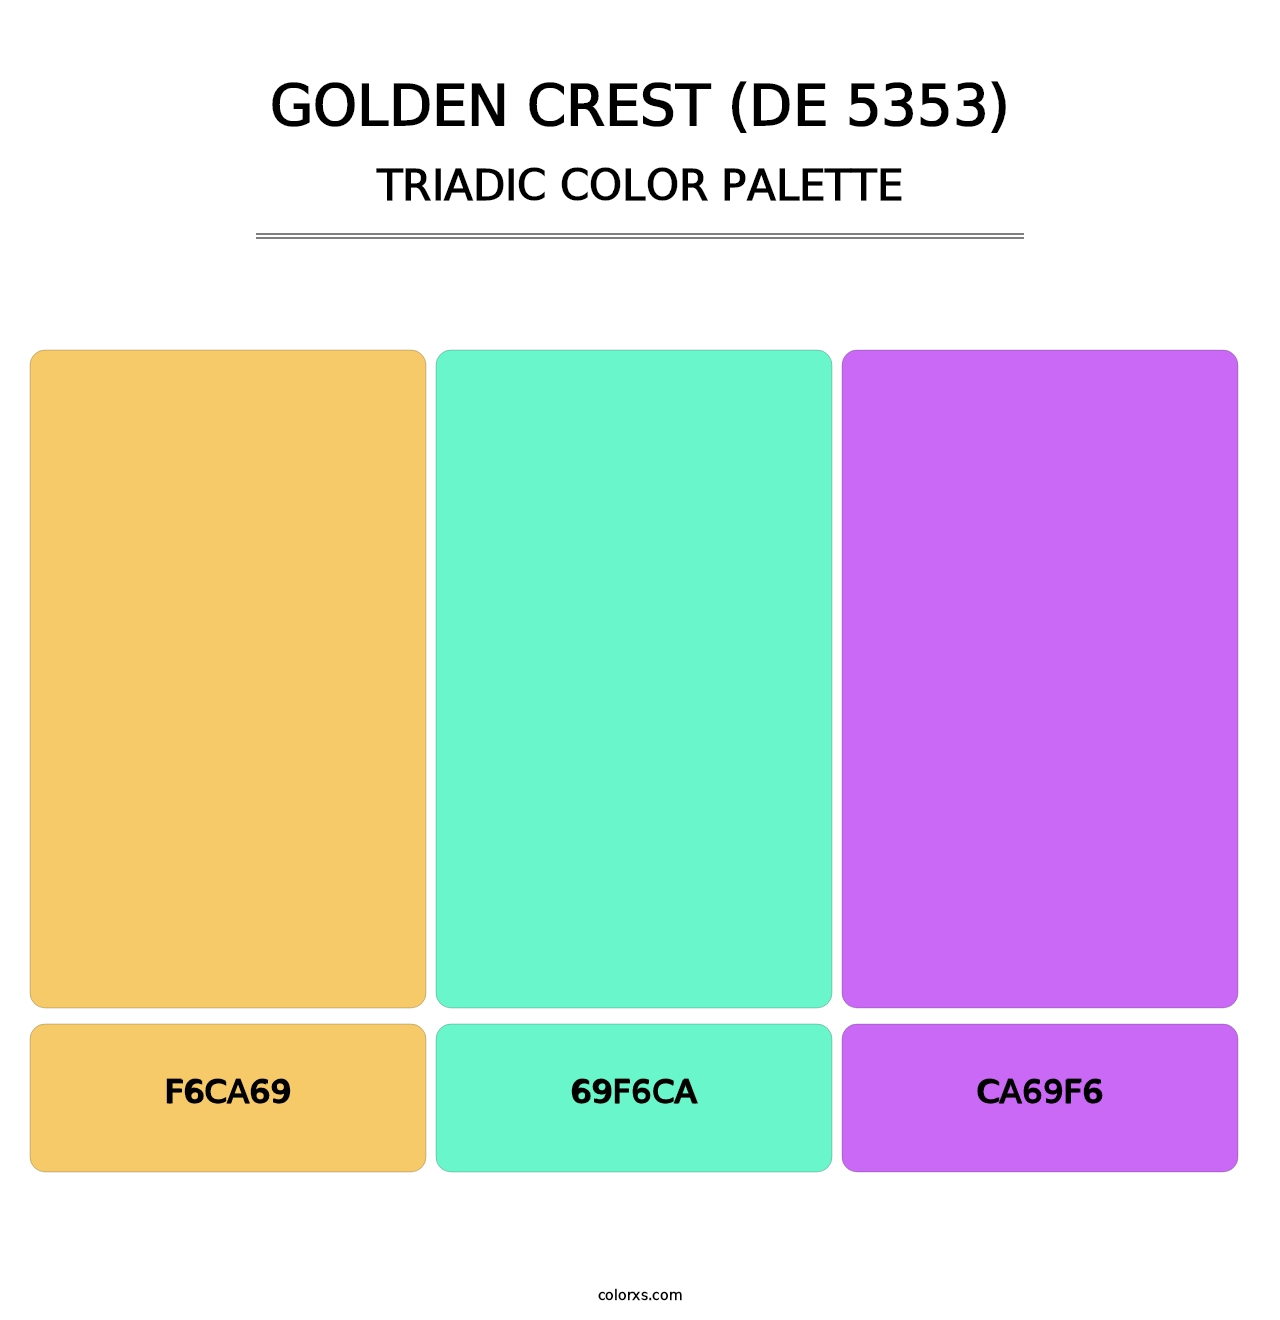 Golden Crest (DE 5353) - Triadic Color Palette